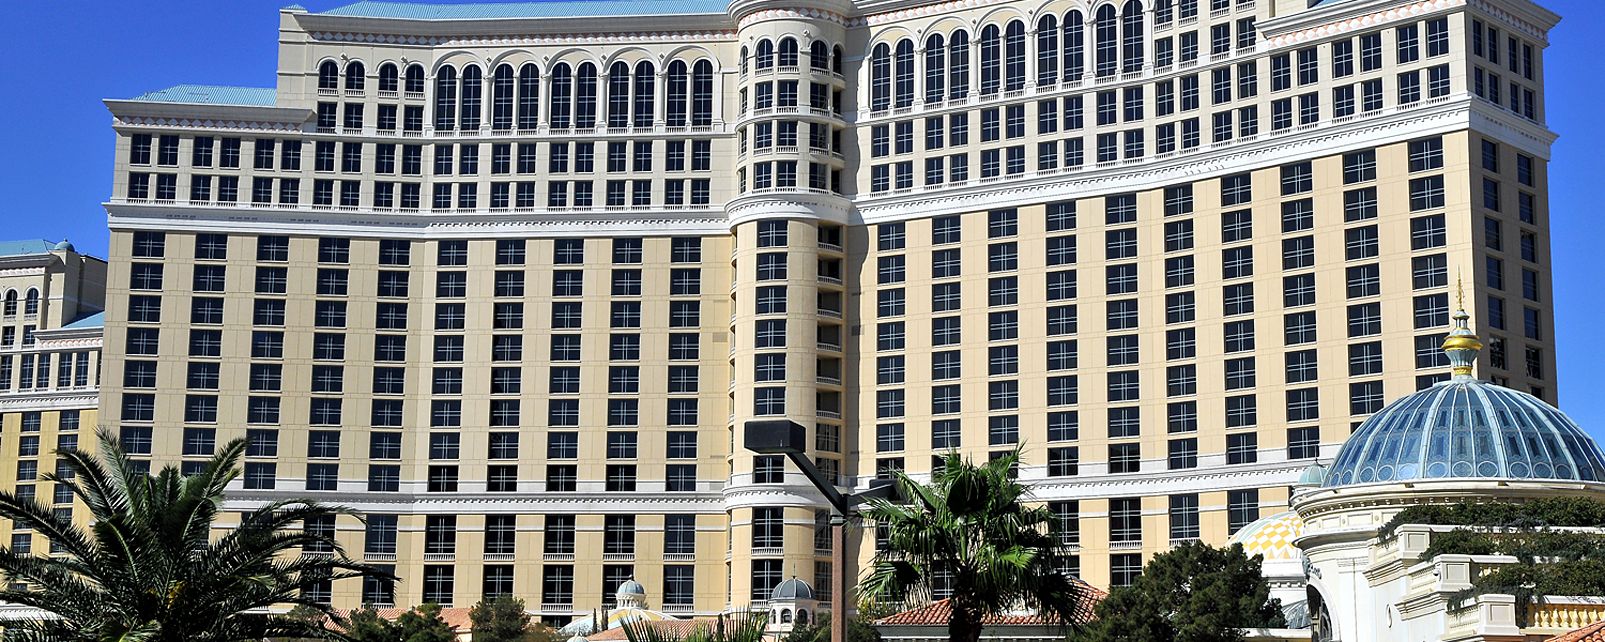 Hotel Bellagio Resort Las Vegas